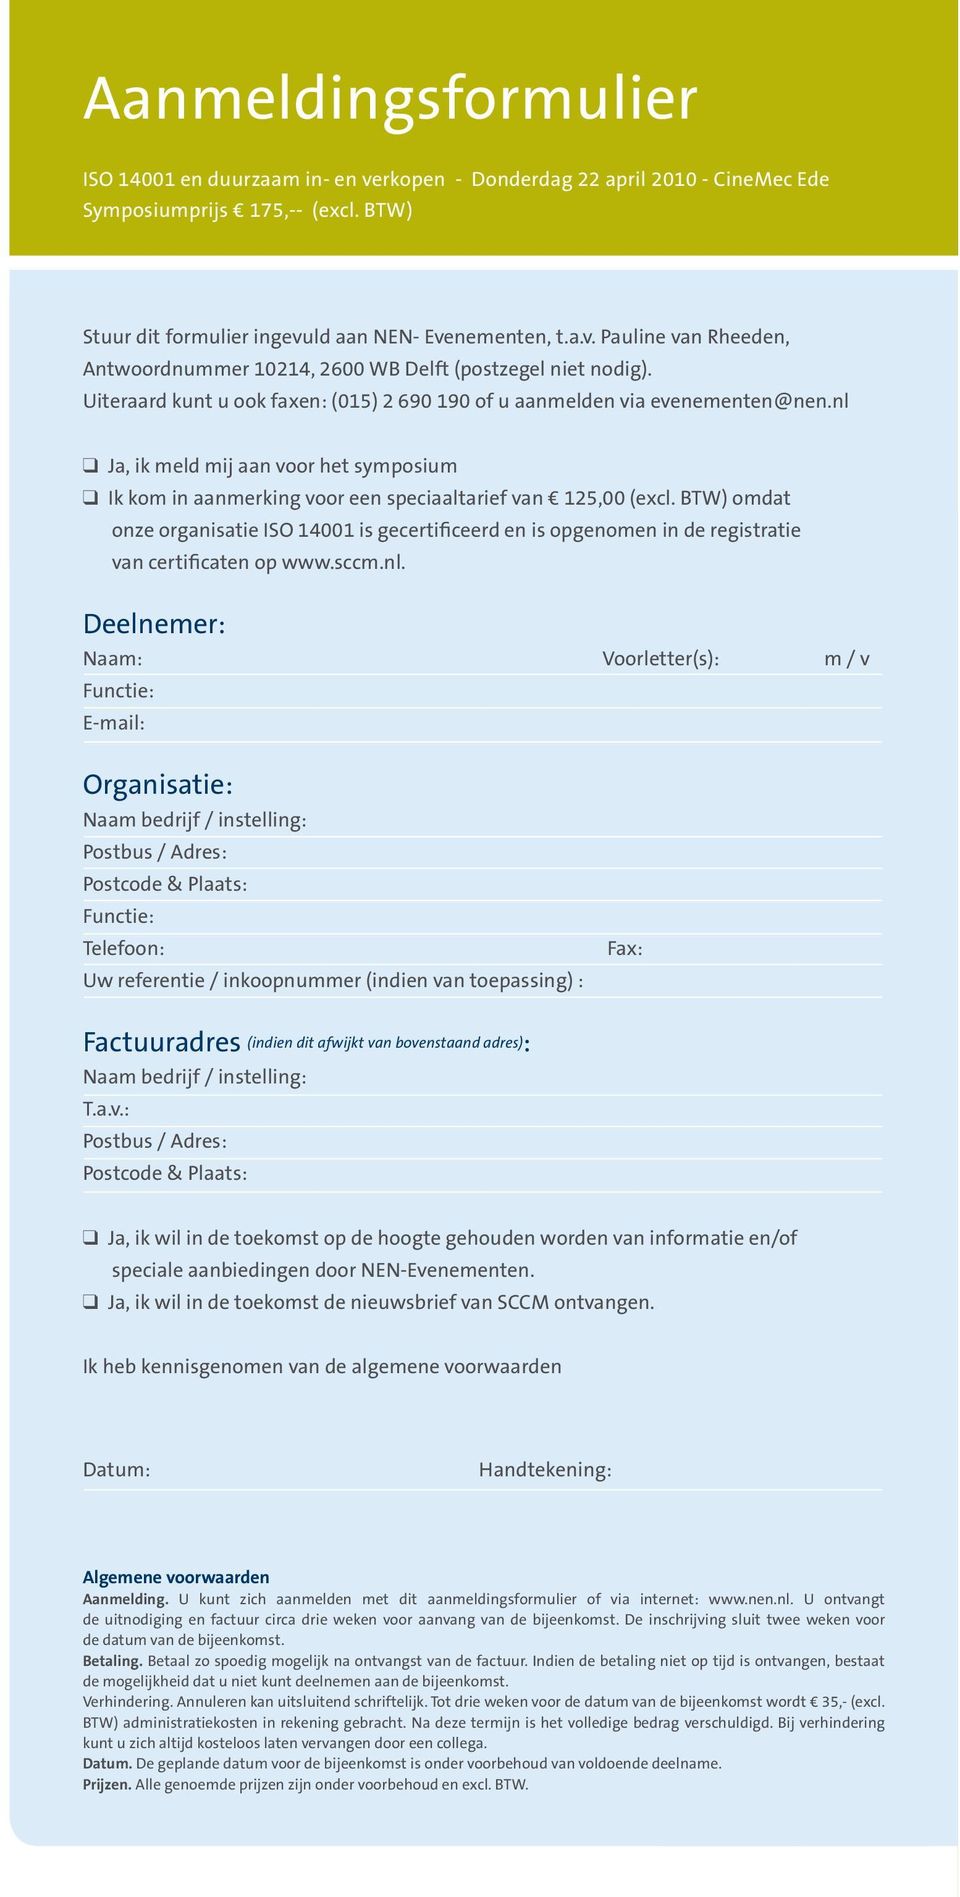 BTW) omdat onze organisatie ISO 14001 is gecertificeerd en is opgenomen in de registratie van certificaten op www.sccm.nl.